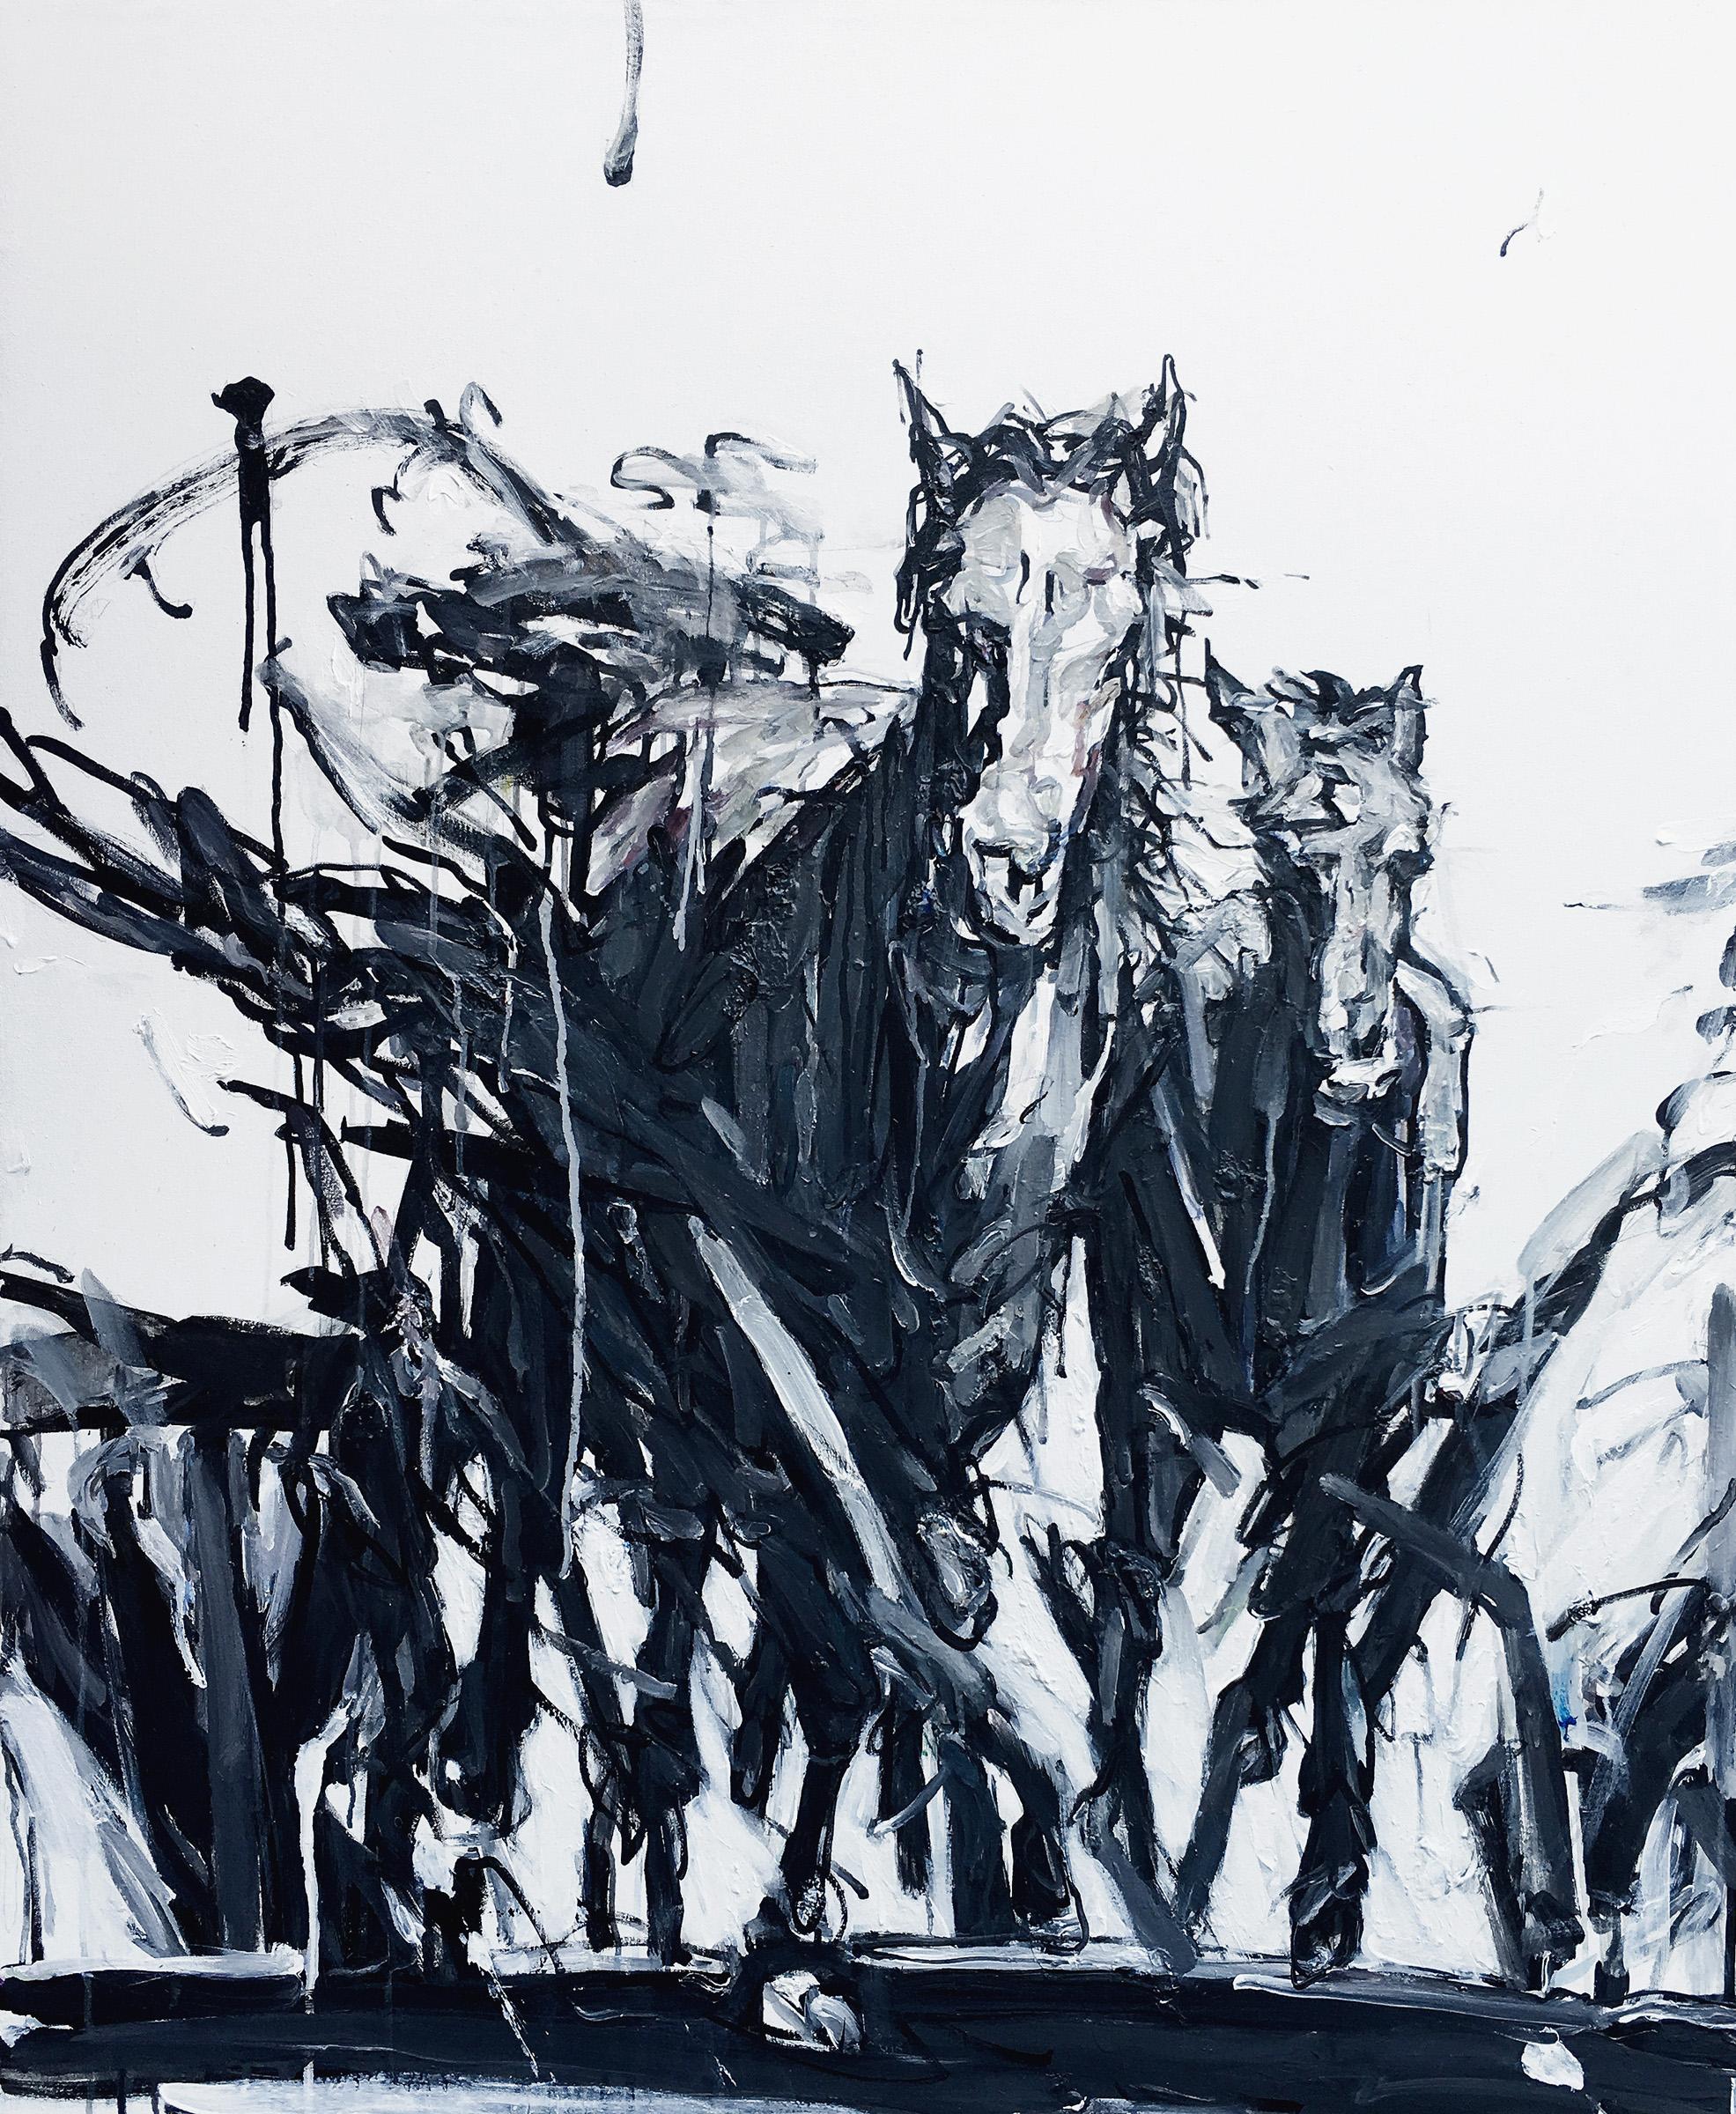 The Herd - Art by Shao Yuan Zhang